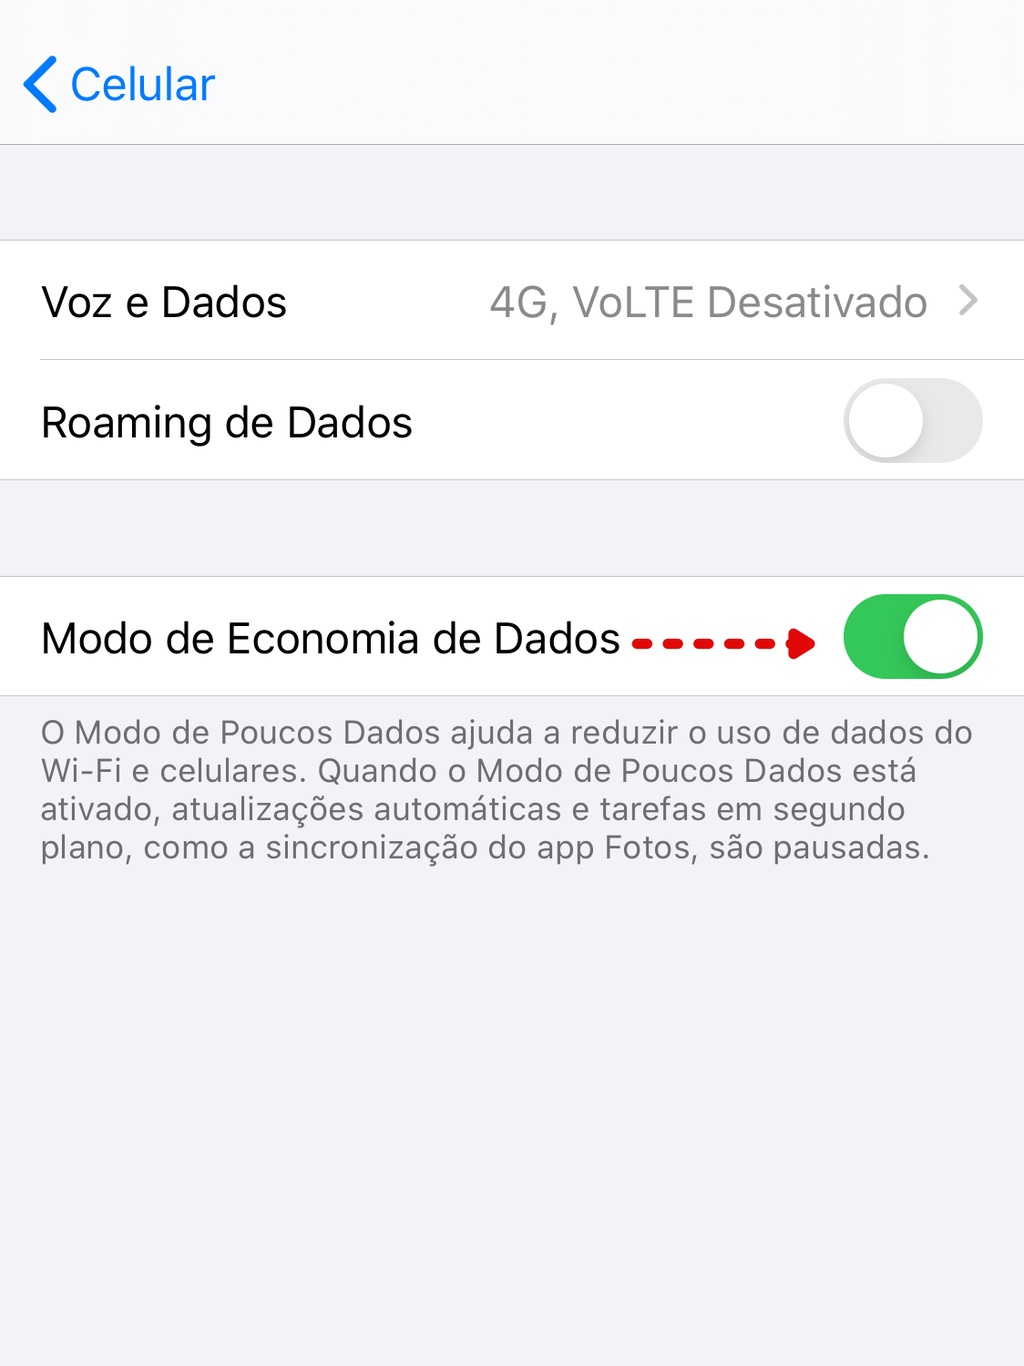 Modo de economia de dados do iPhone  / Captura de tela: Bruno Salutes